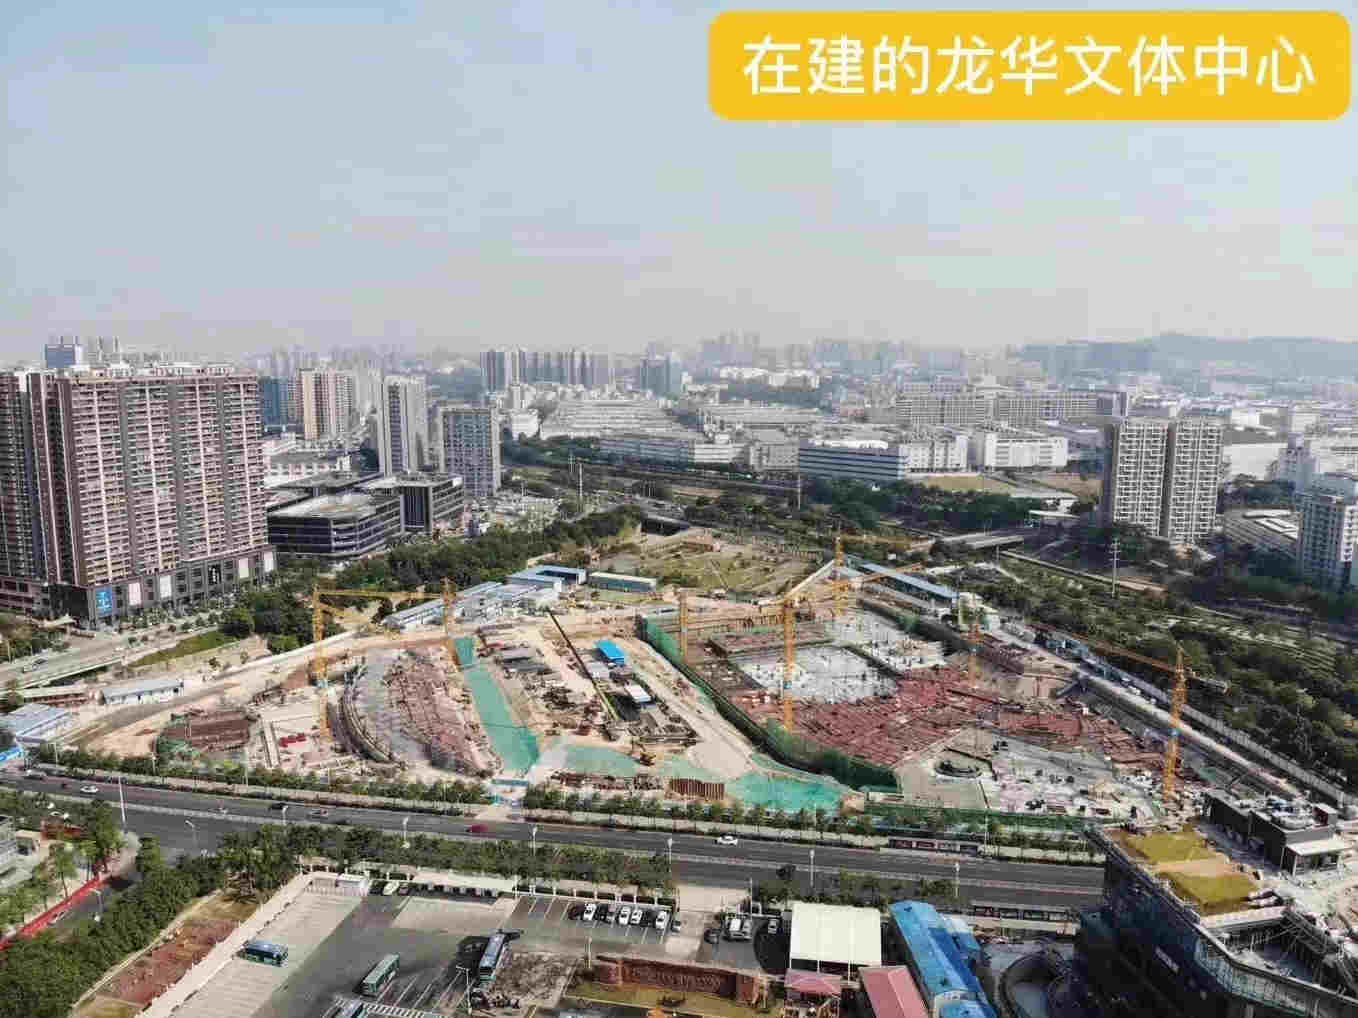 龙华清湖地铁口幸福新城10栋大型统建楼花园小区均价25000元带精装修